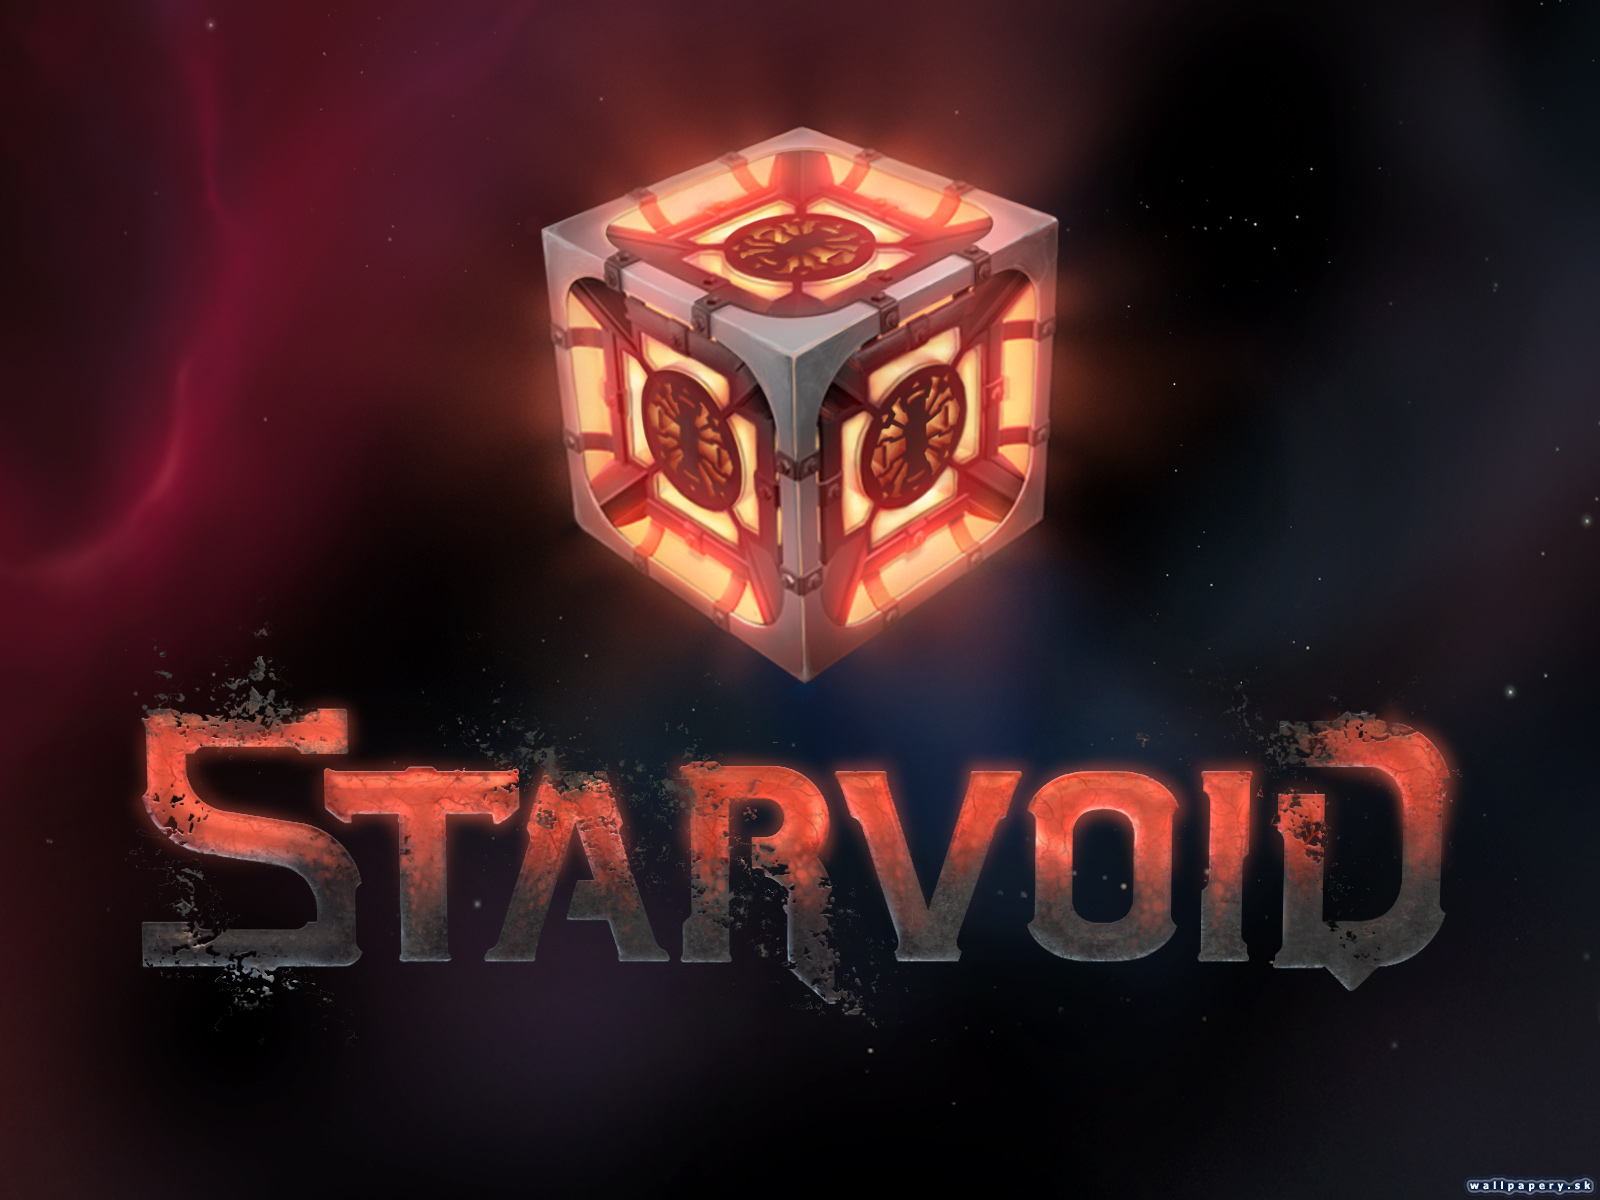 Starvoid - wallpaper 2